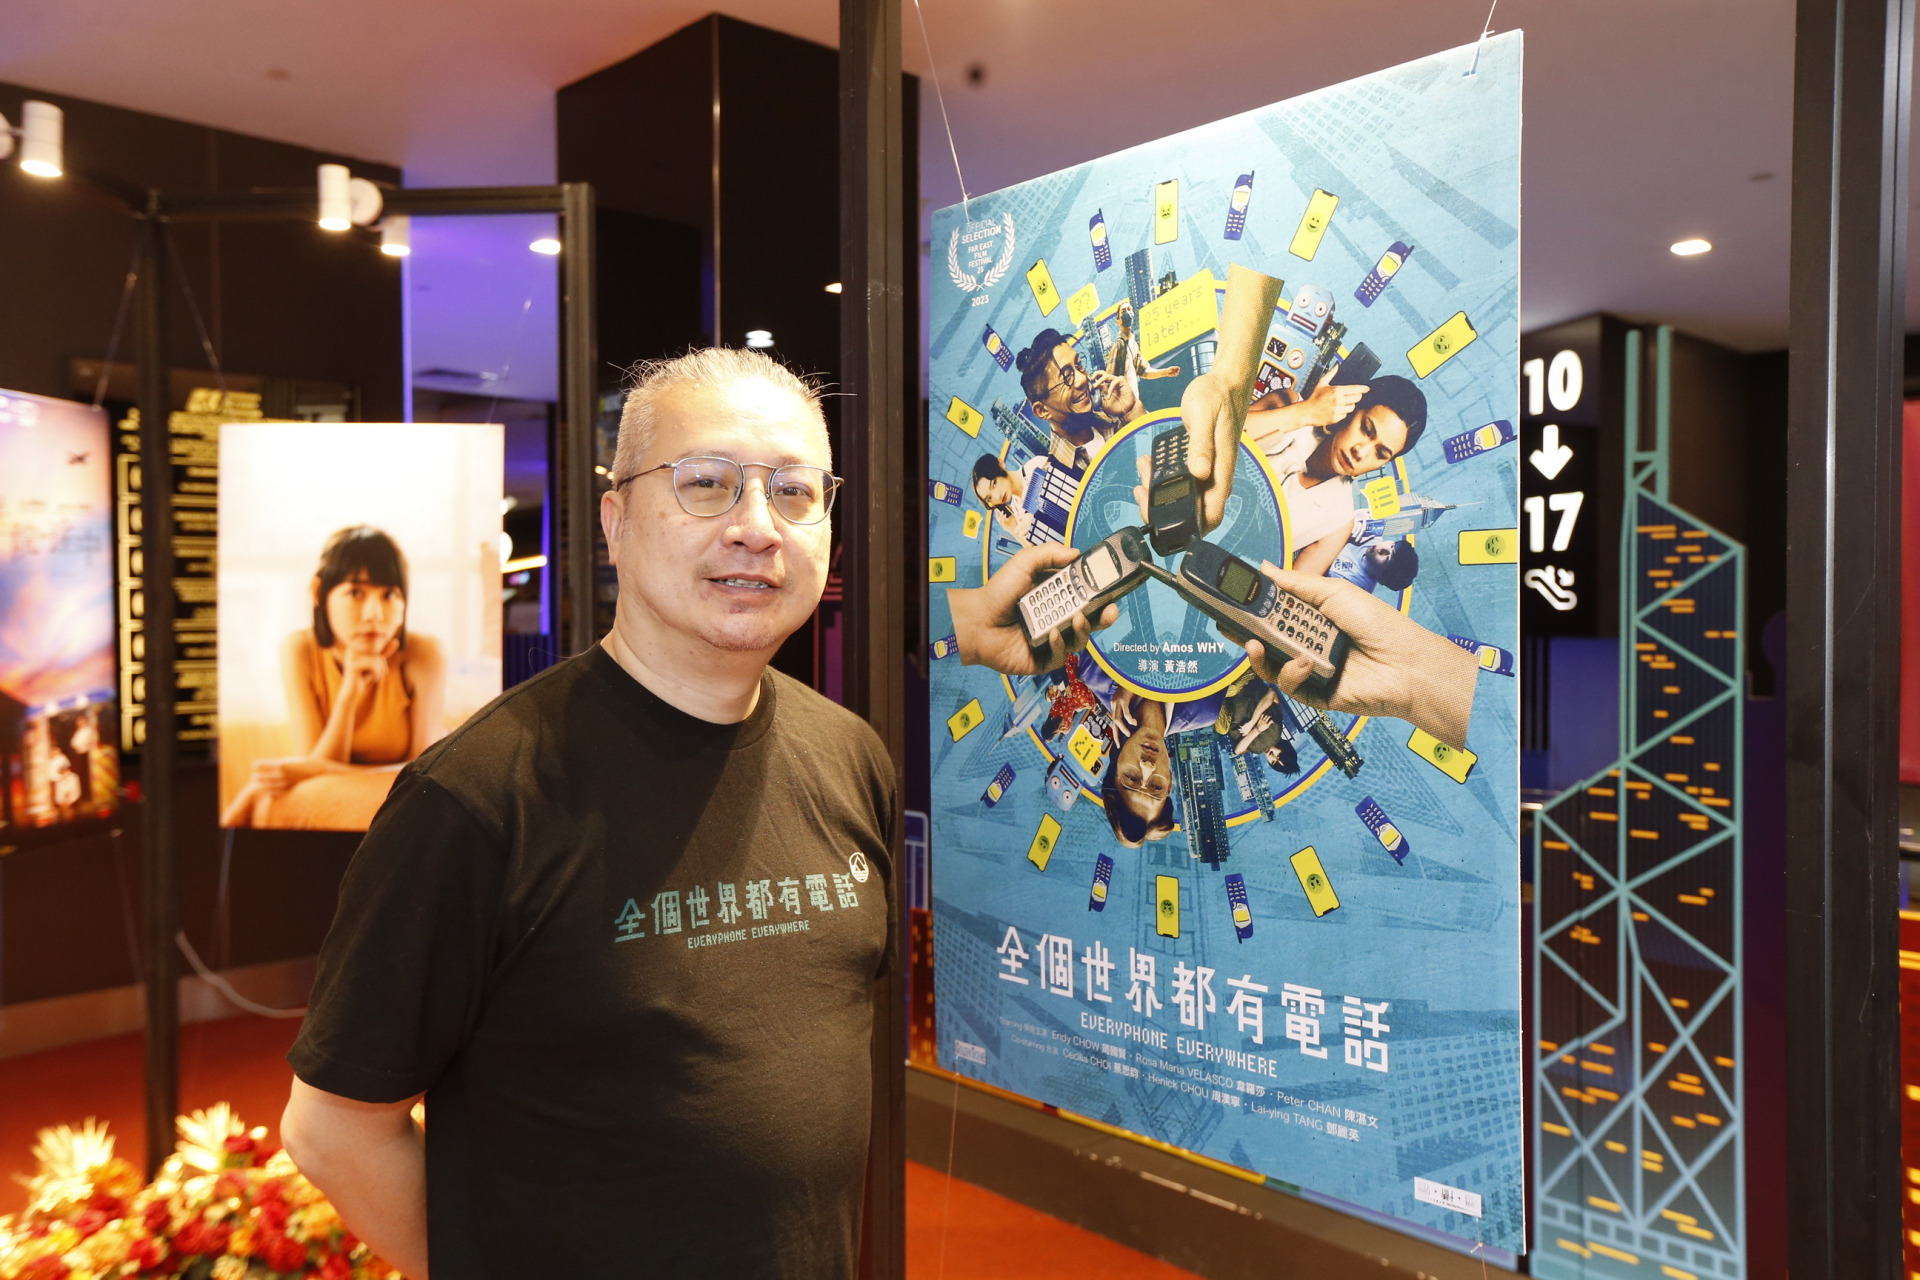 黄浩然执导的《全个世界都有电话》是一部香港喜剧电影，由于题材新鲜相信能够获得观众的共鸣。